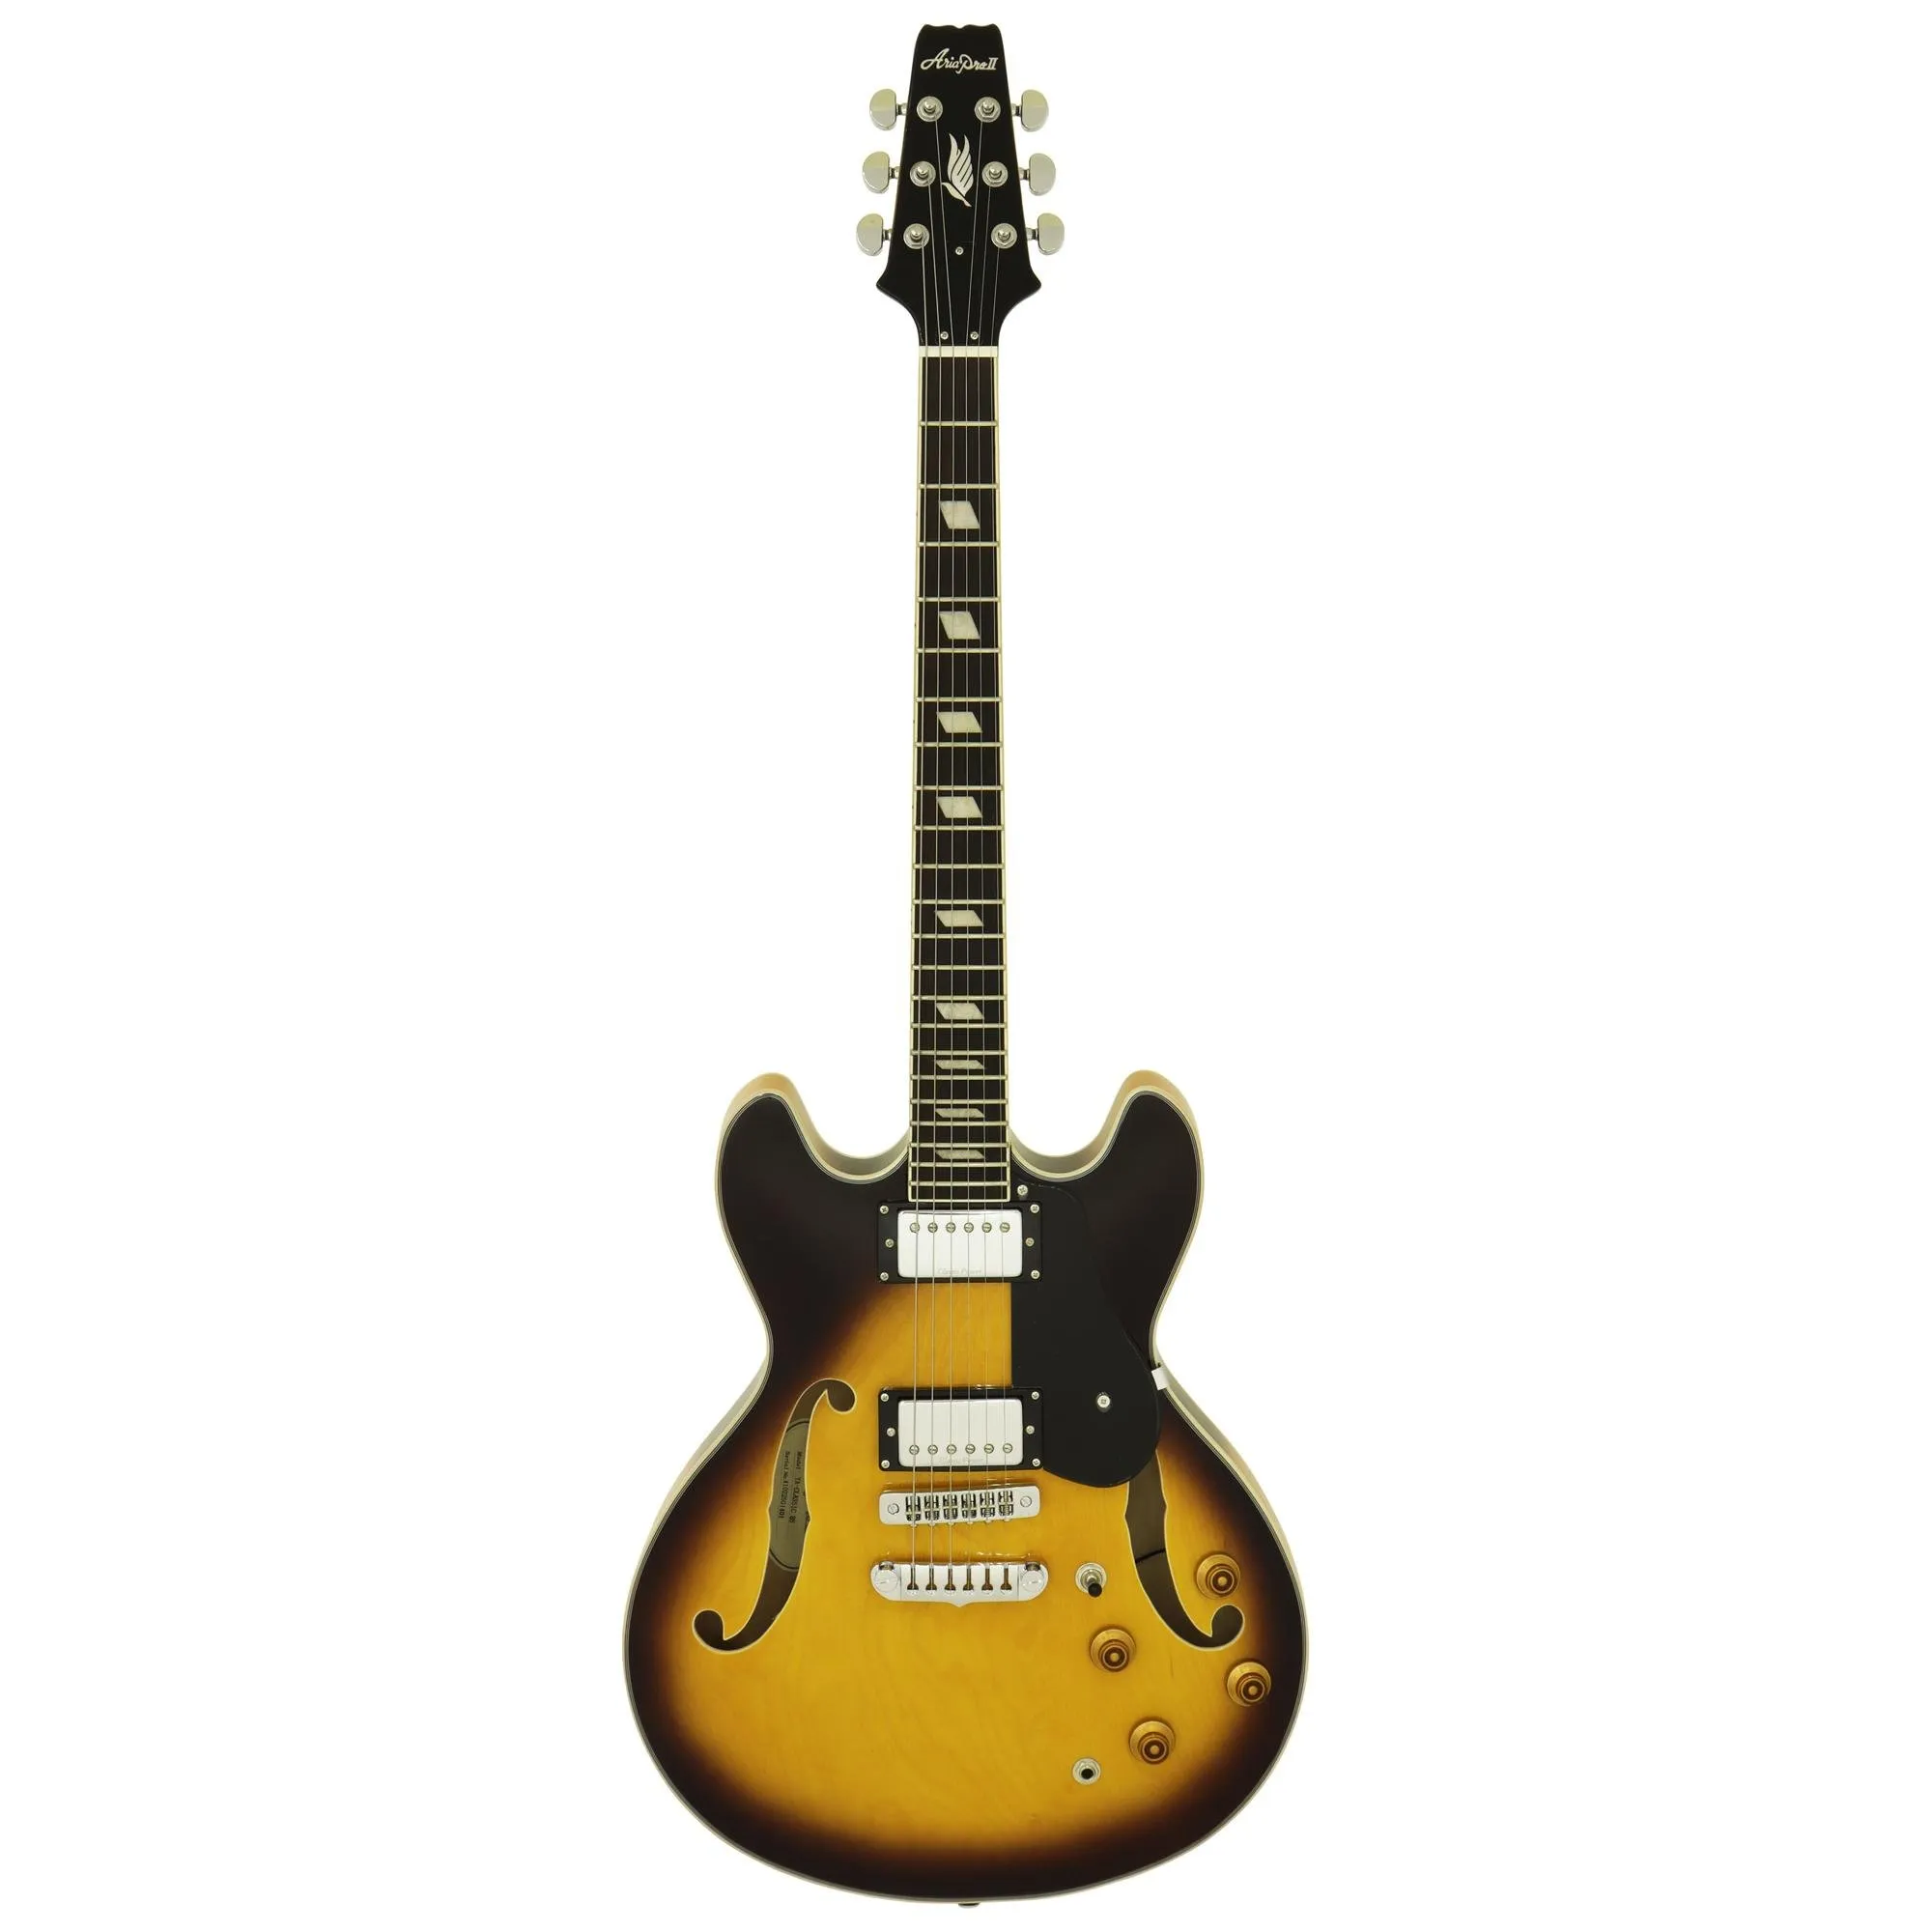 Guitarra Aria Pro II TA-CLASSIC Brown Burst por 0,00 à vista no boleto/pix ou parcele em até 1x sem juros. Compre na loja Mundomax!